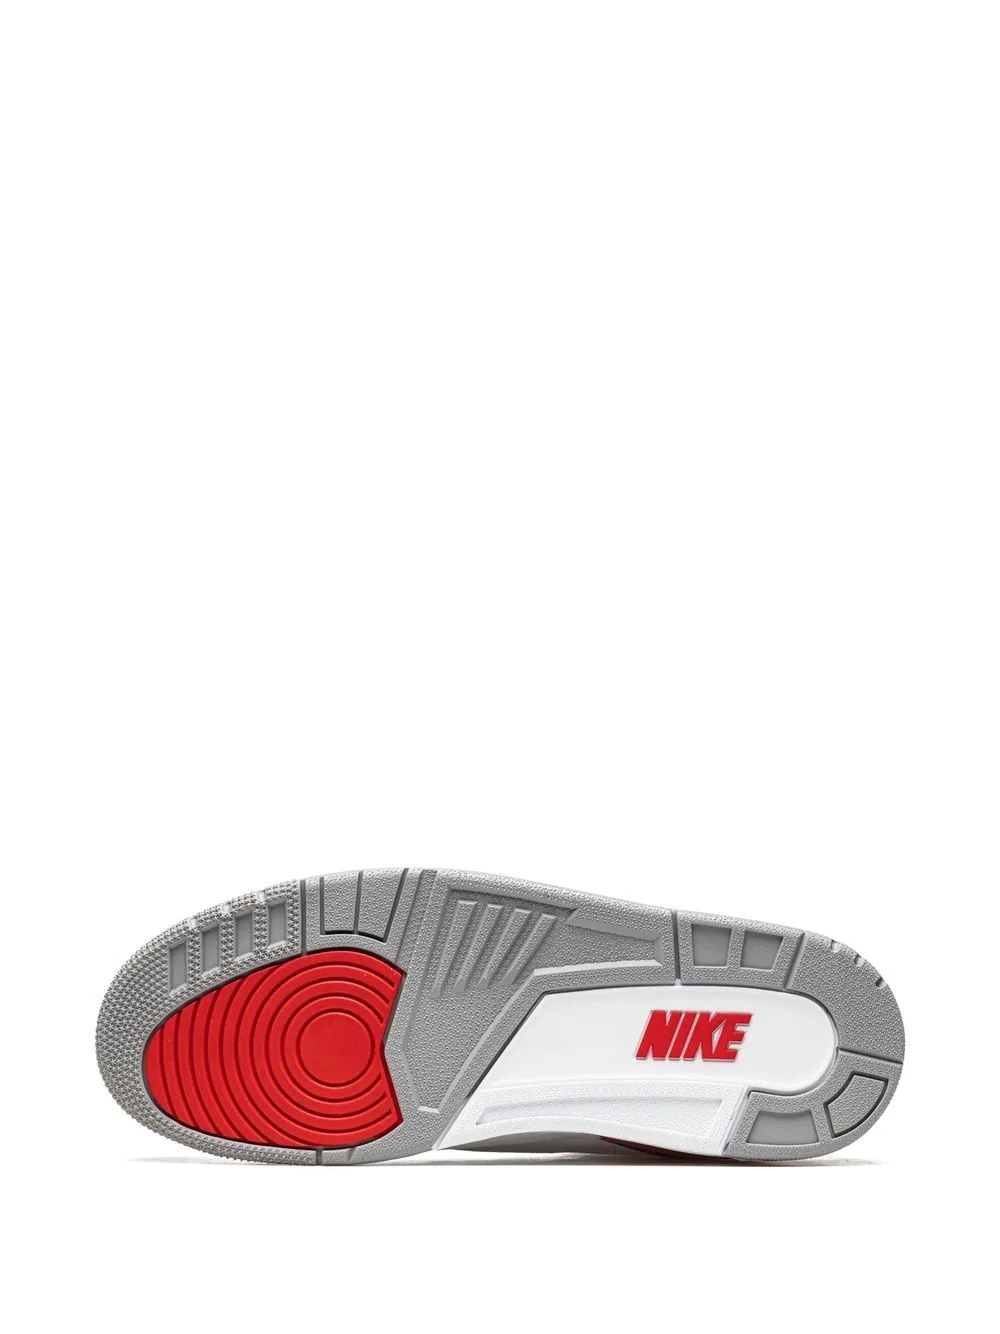 Air Jordan 3 Retro OG sneakers - 4